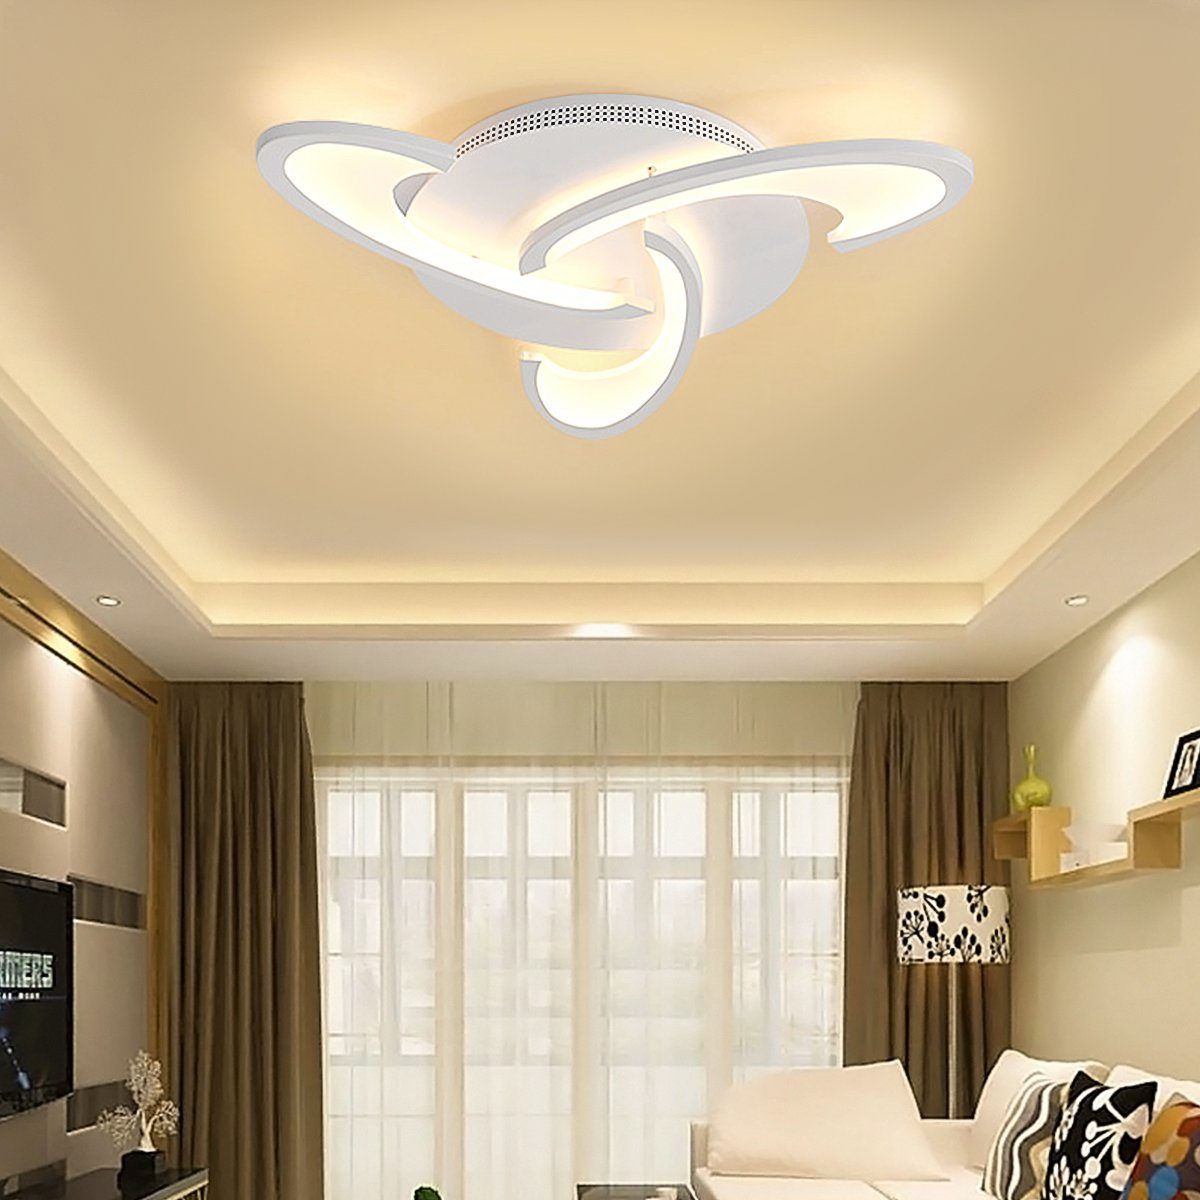 ECSEE Deckenleuchte, Moderner Lüster LED Deckenlampe Kronleuchter für  Wohnzimmer Flur Schlafzimmer Kinderzimmer online kaufen | OTTO